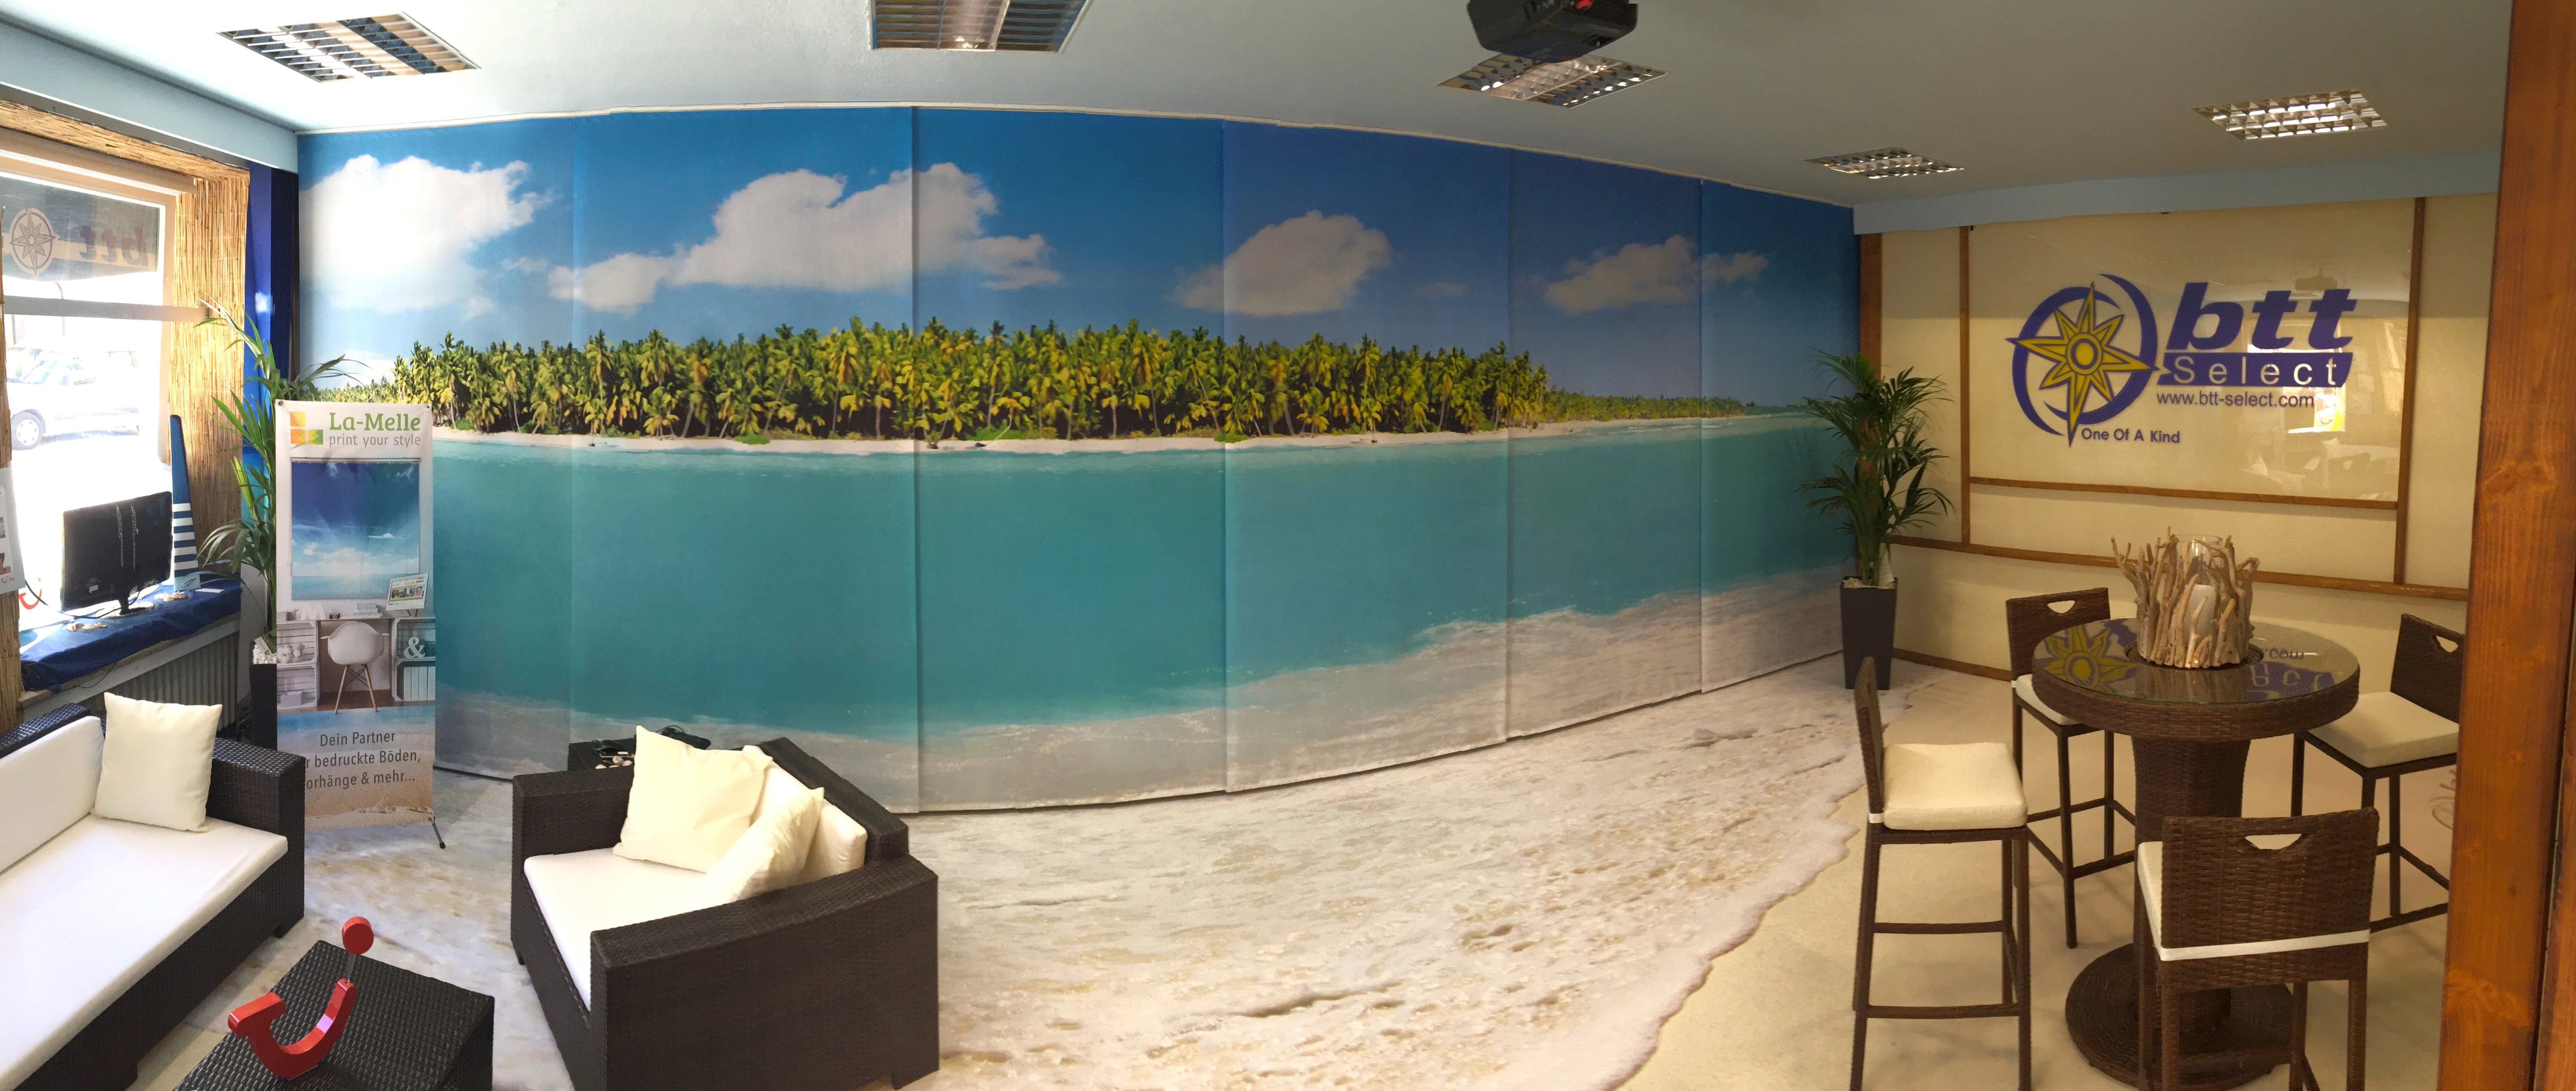 mit Foto-Teppich und Schiebevorhang mit Motiv eingerichtetes Reisebüro Motiv aus der Südsee fortlaufend bedruckt mit Palmen Strand und Meer